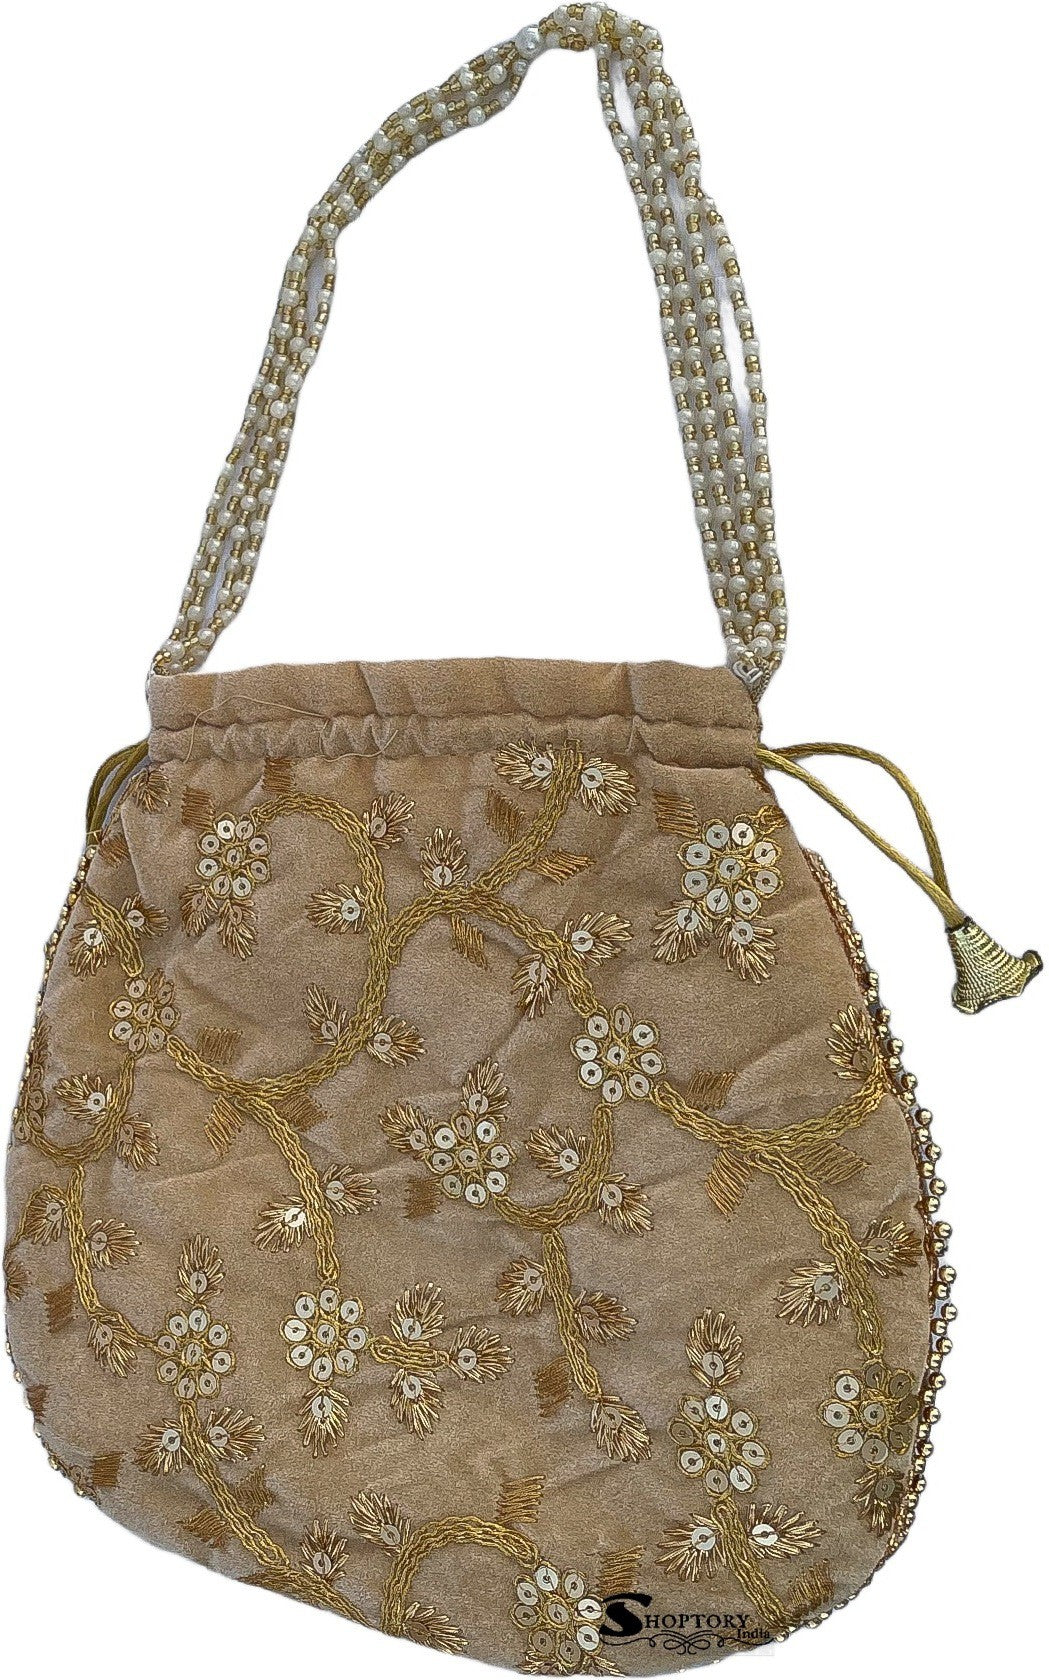 Ekavya Indian Ethnic Potli Bag wedding purse jewelry purse India | Ubuy